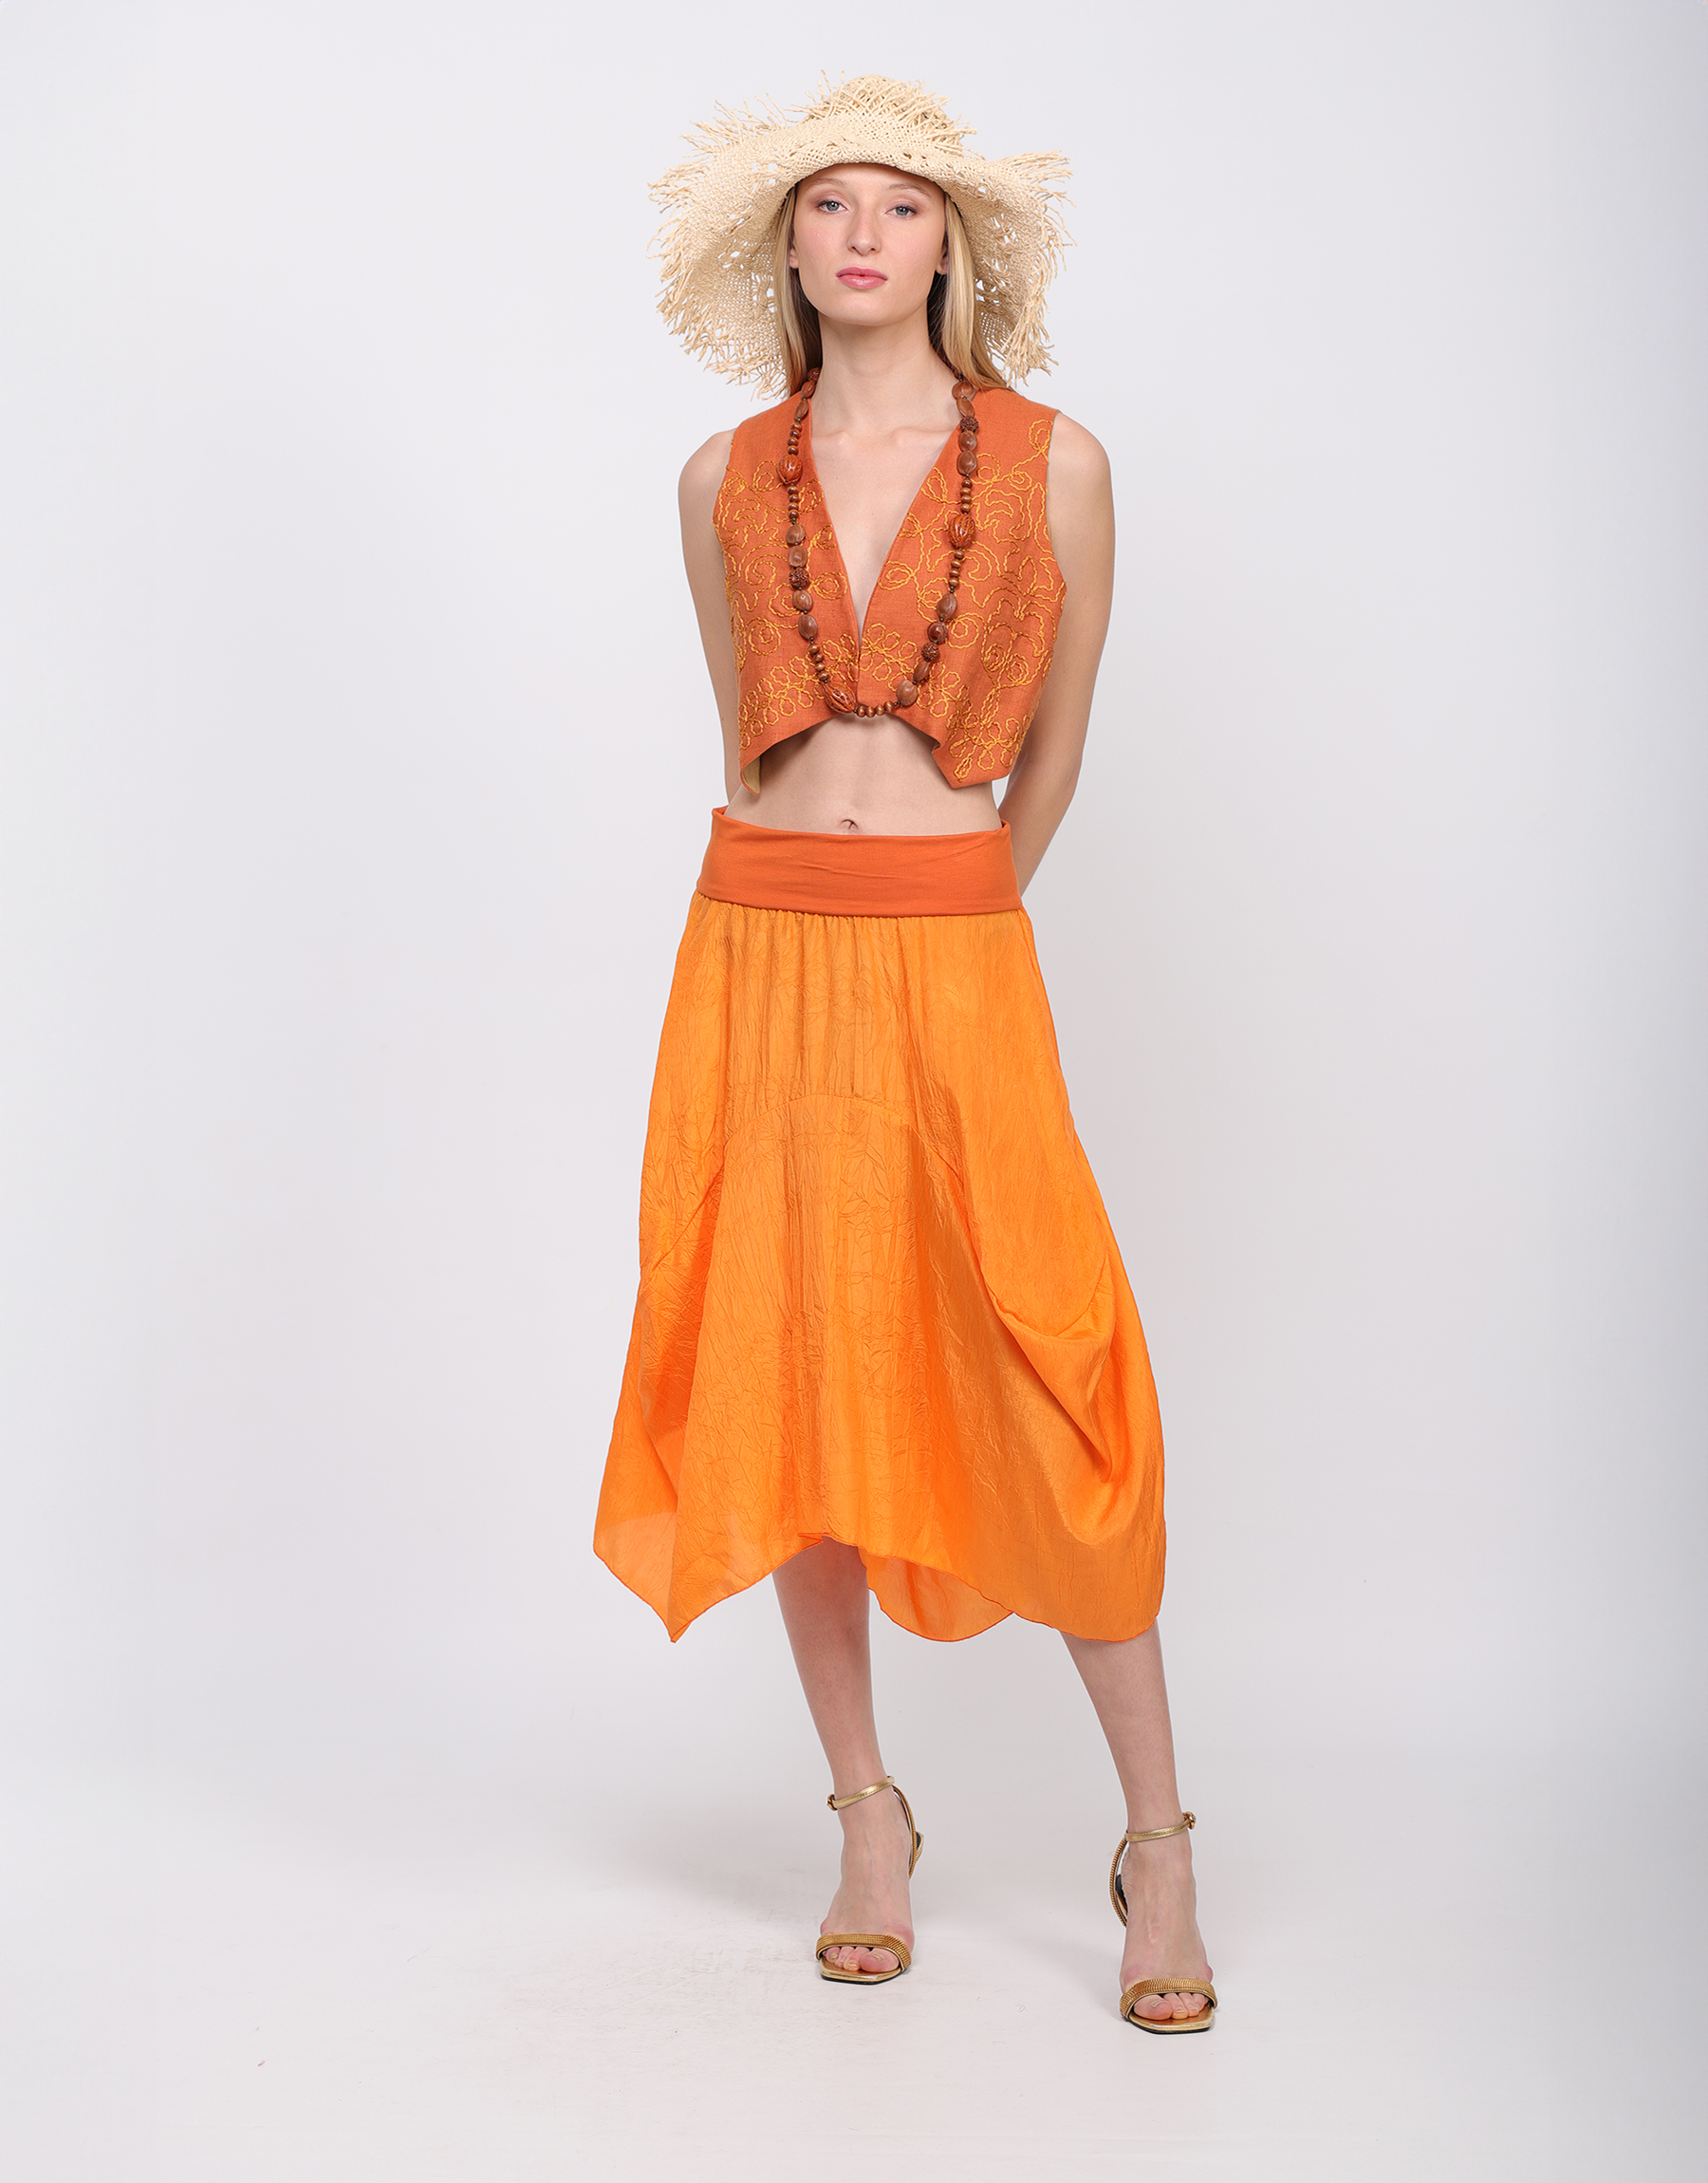 Long flowing skirt in orange or beige crumpled silk